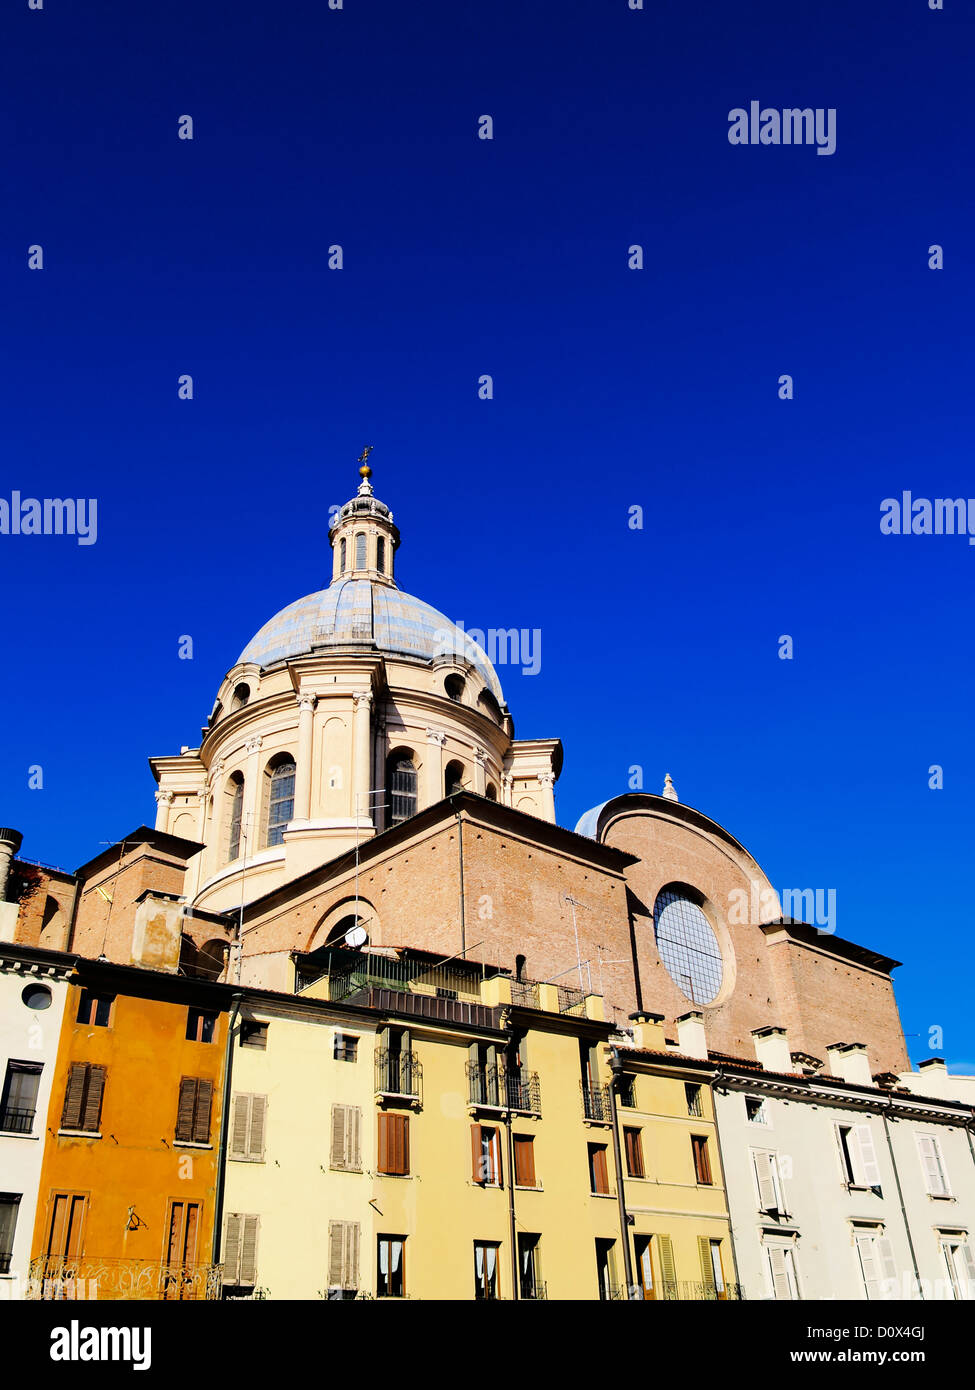 La Cathédrale de Mantoue, Lombardie, Italie Banque D'Images